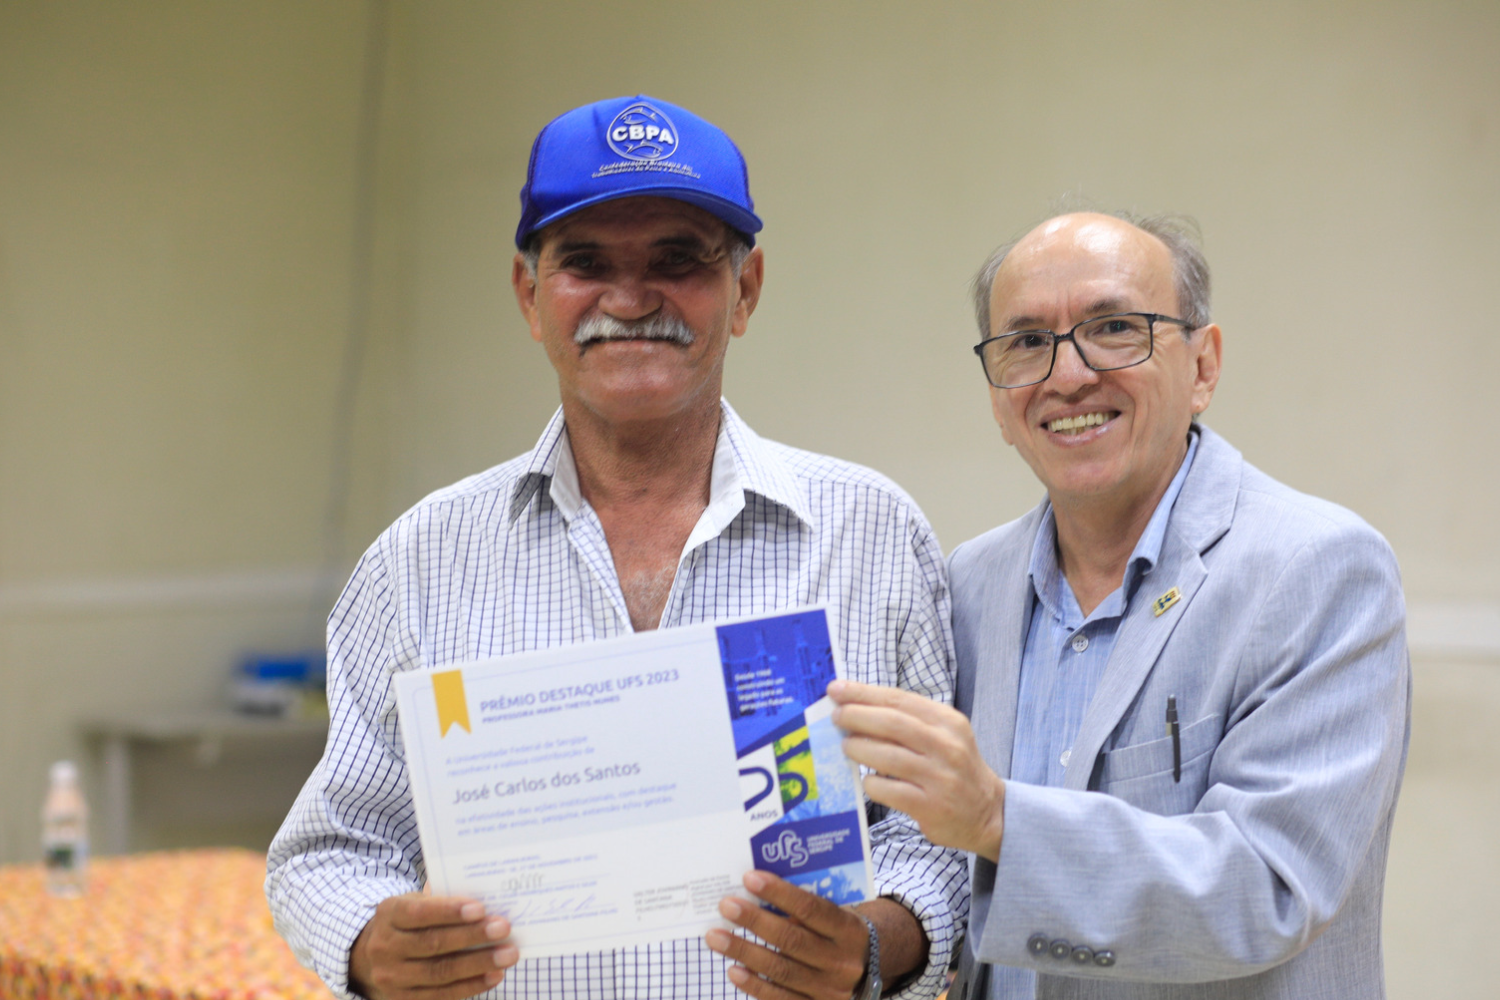 Vice-reitor Rosalvo Ferreira também participou da entrega da prêmio. (foto: Pedro Ramos/Ascom UFS)